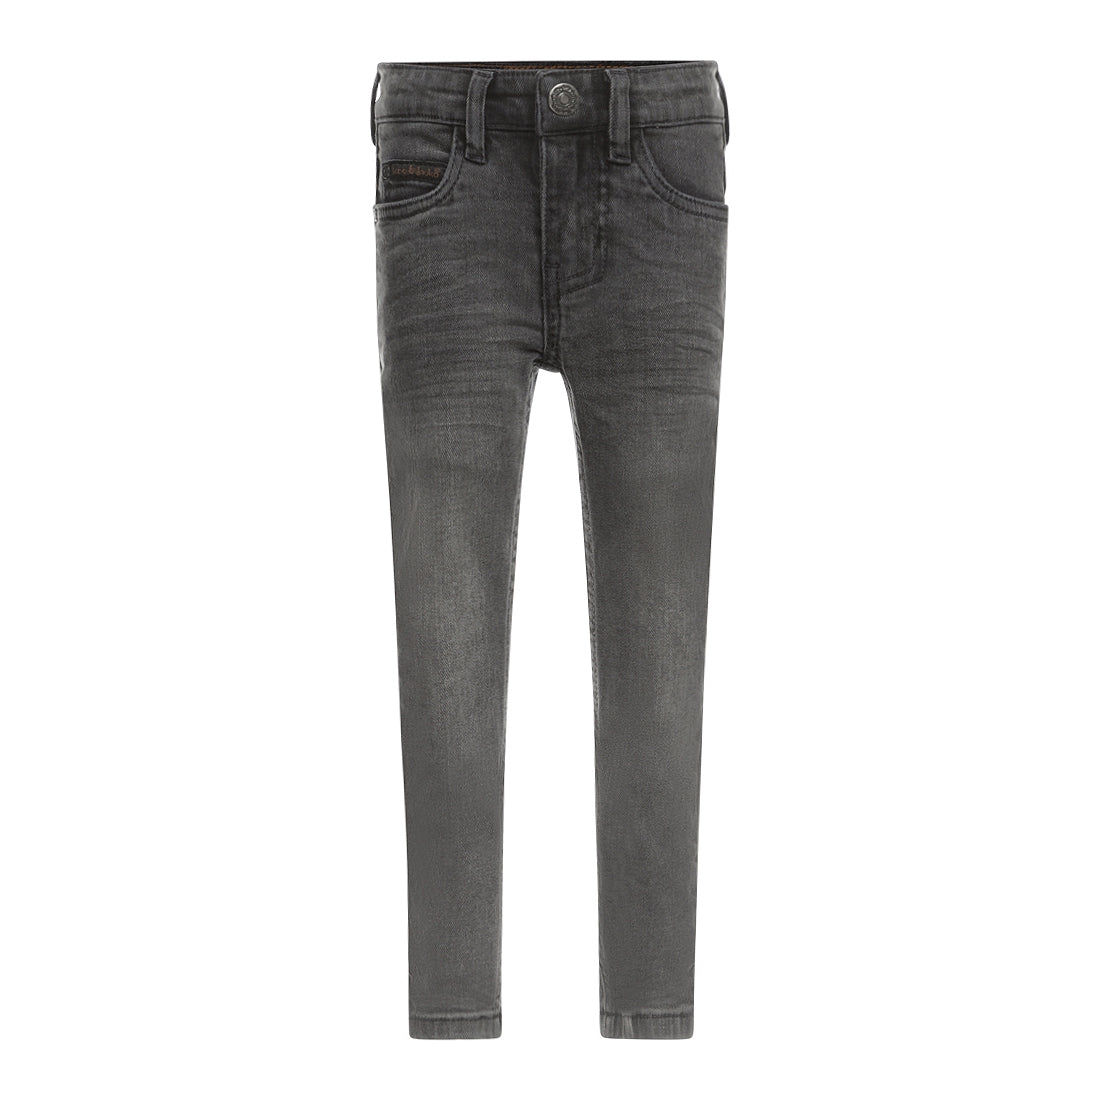 Jongens Jeans Skinny van Koko Noko in de kleur Dark grey jeans in maat 128.